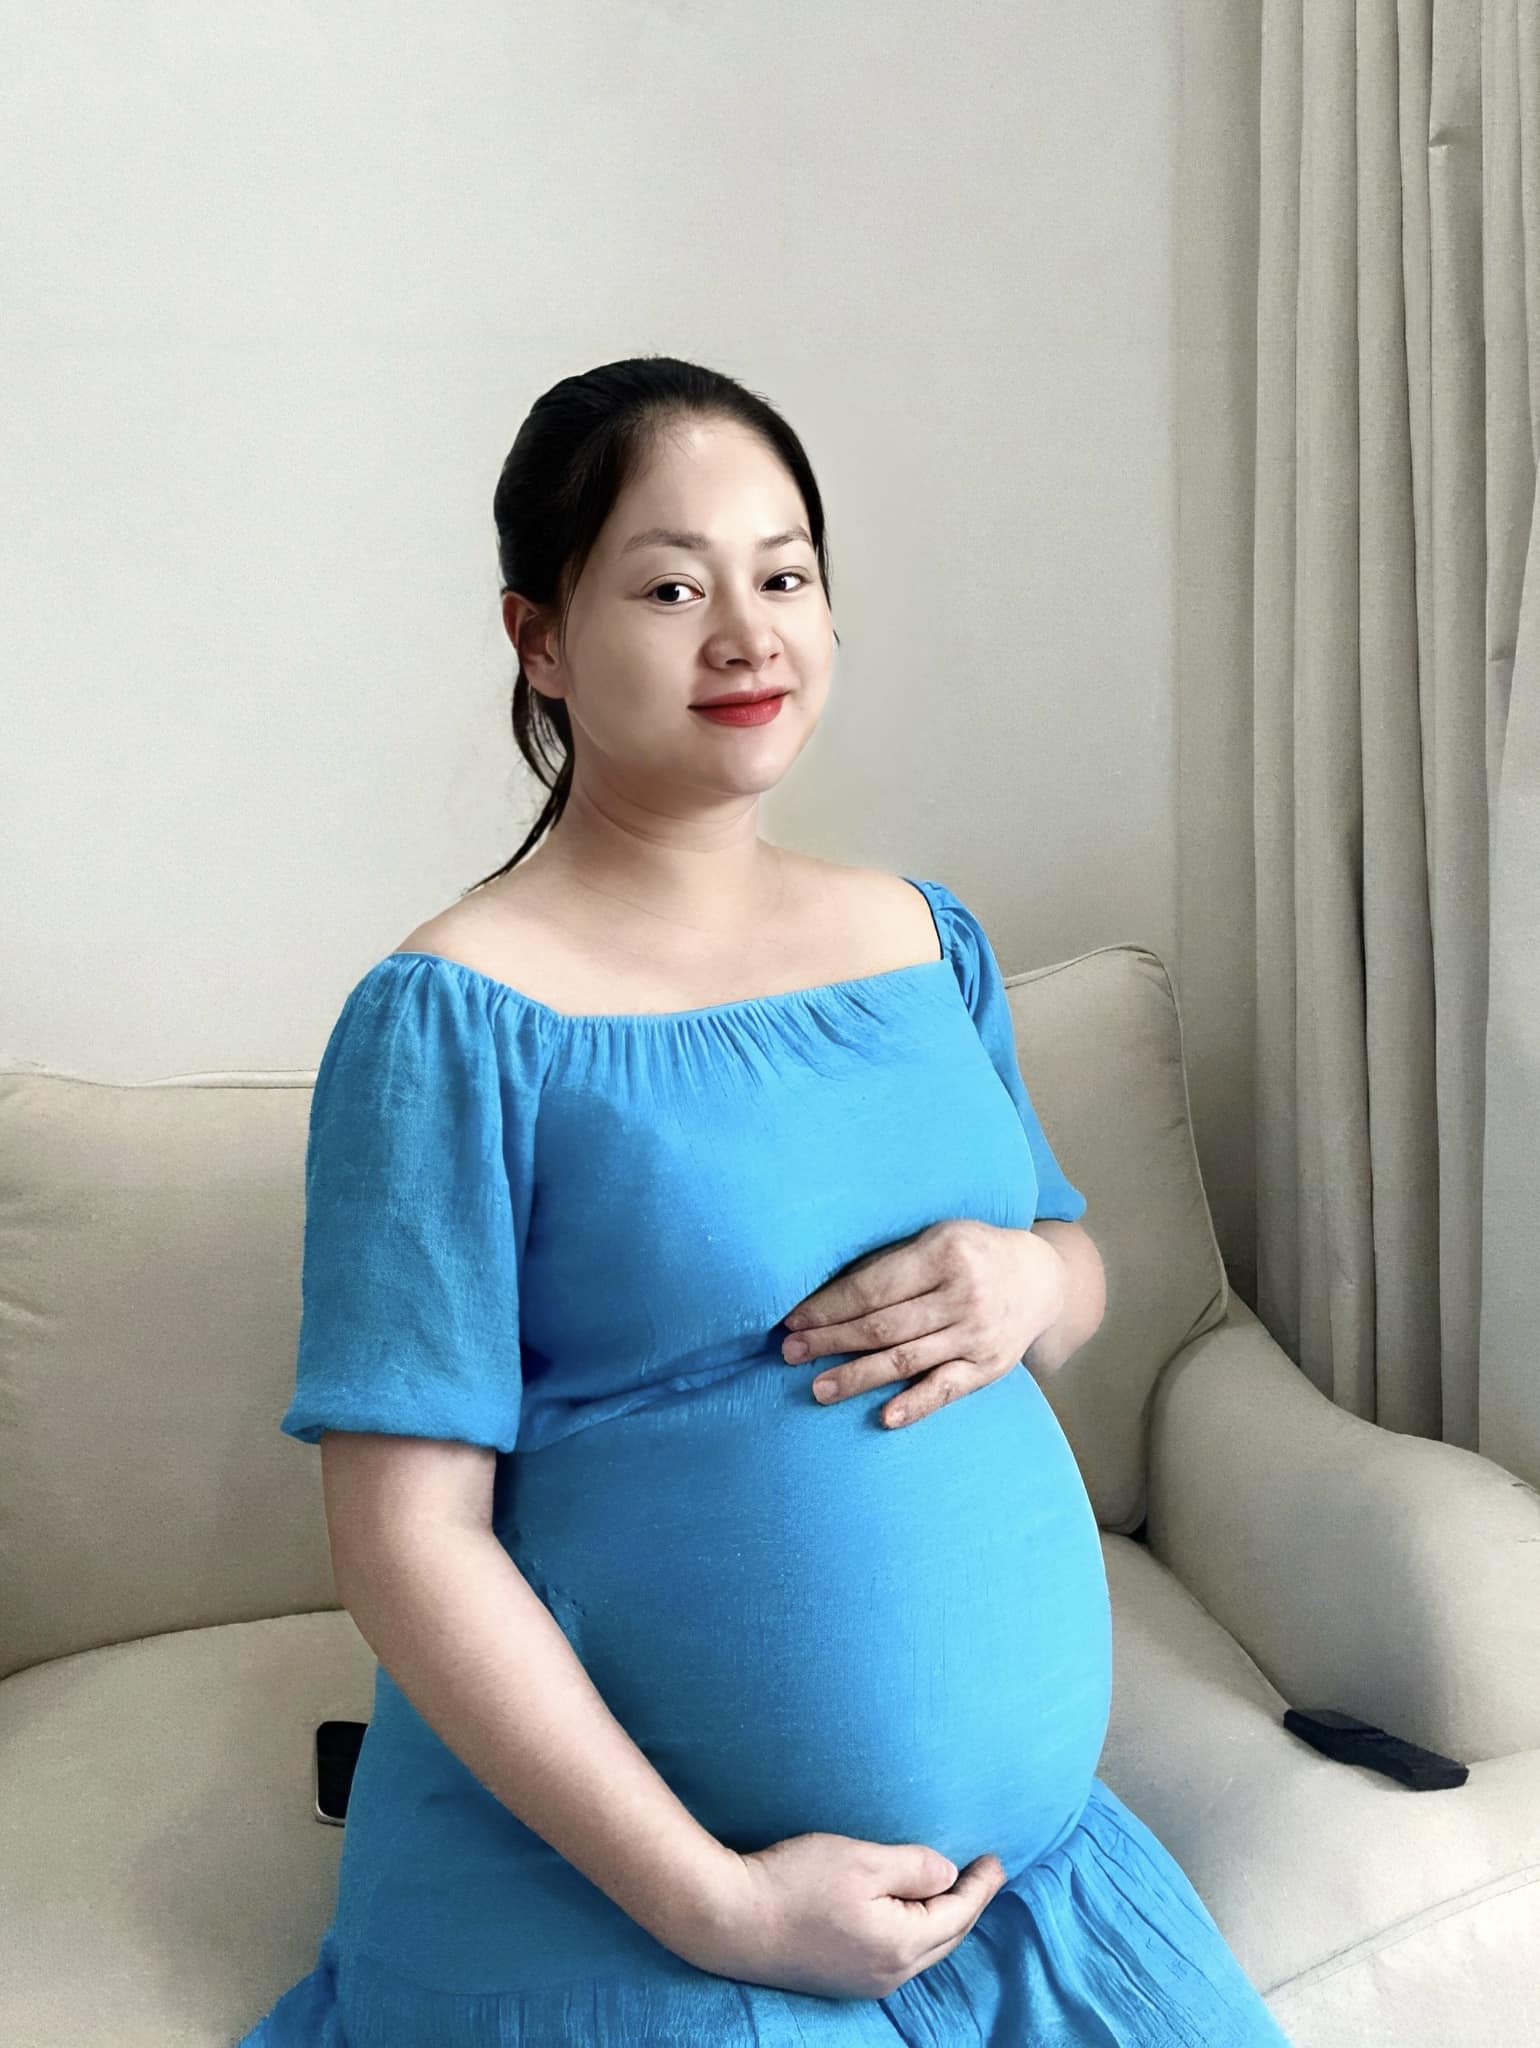 Diễn viên Lan Phương thông báo đã sinh con ở tuổi 41, tiết lộ điều trùng hợp khiến niềm vui nhân đôi - Ảnh 2.